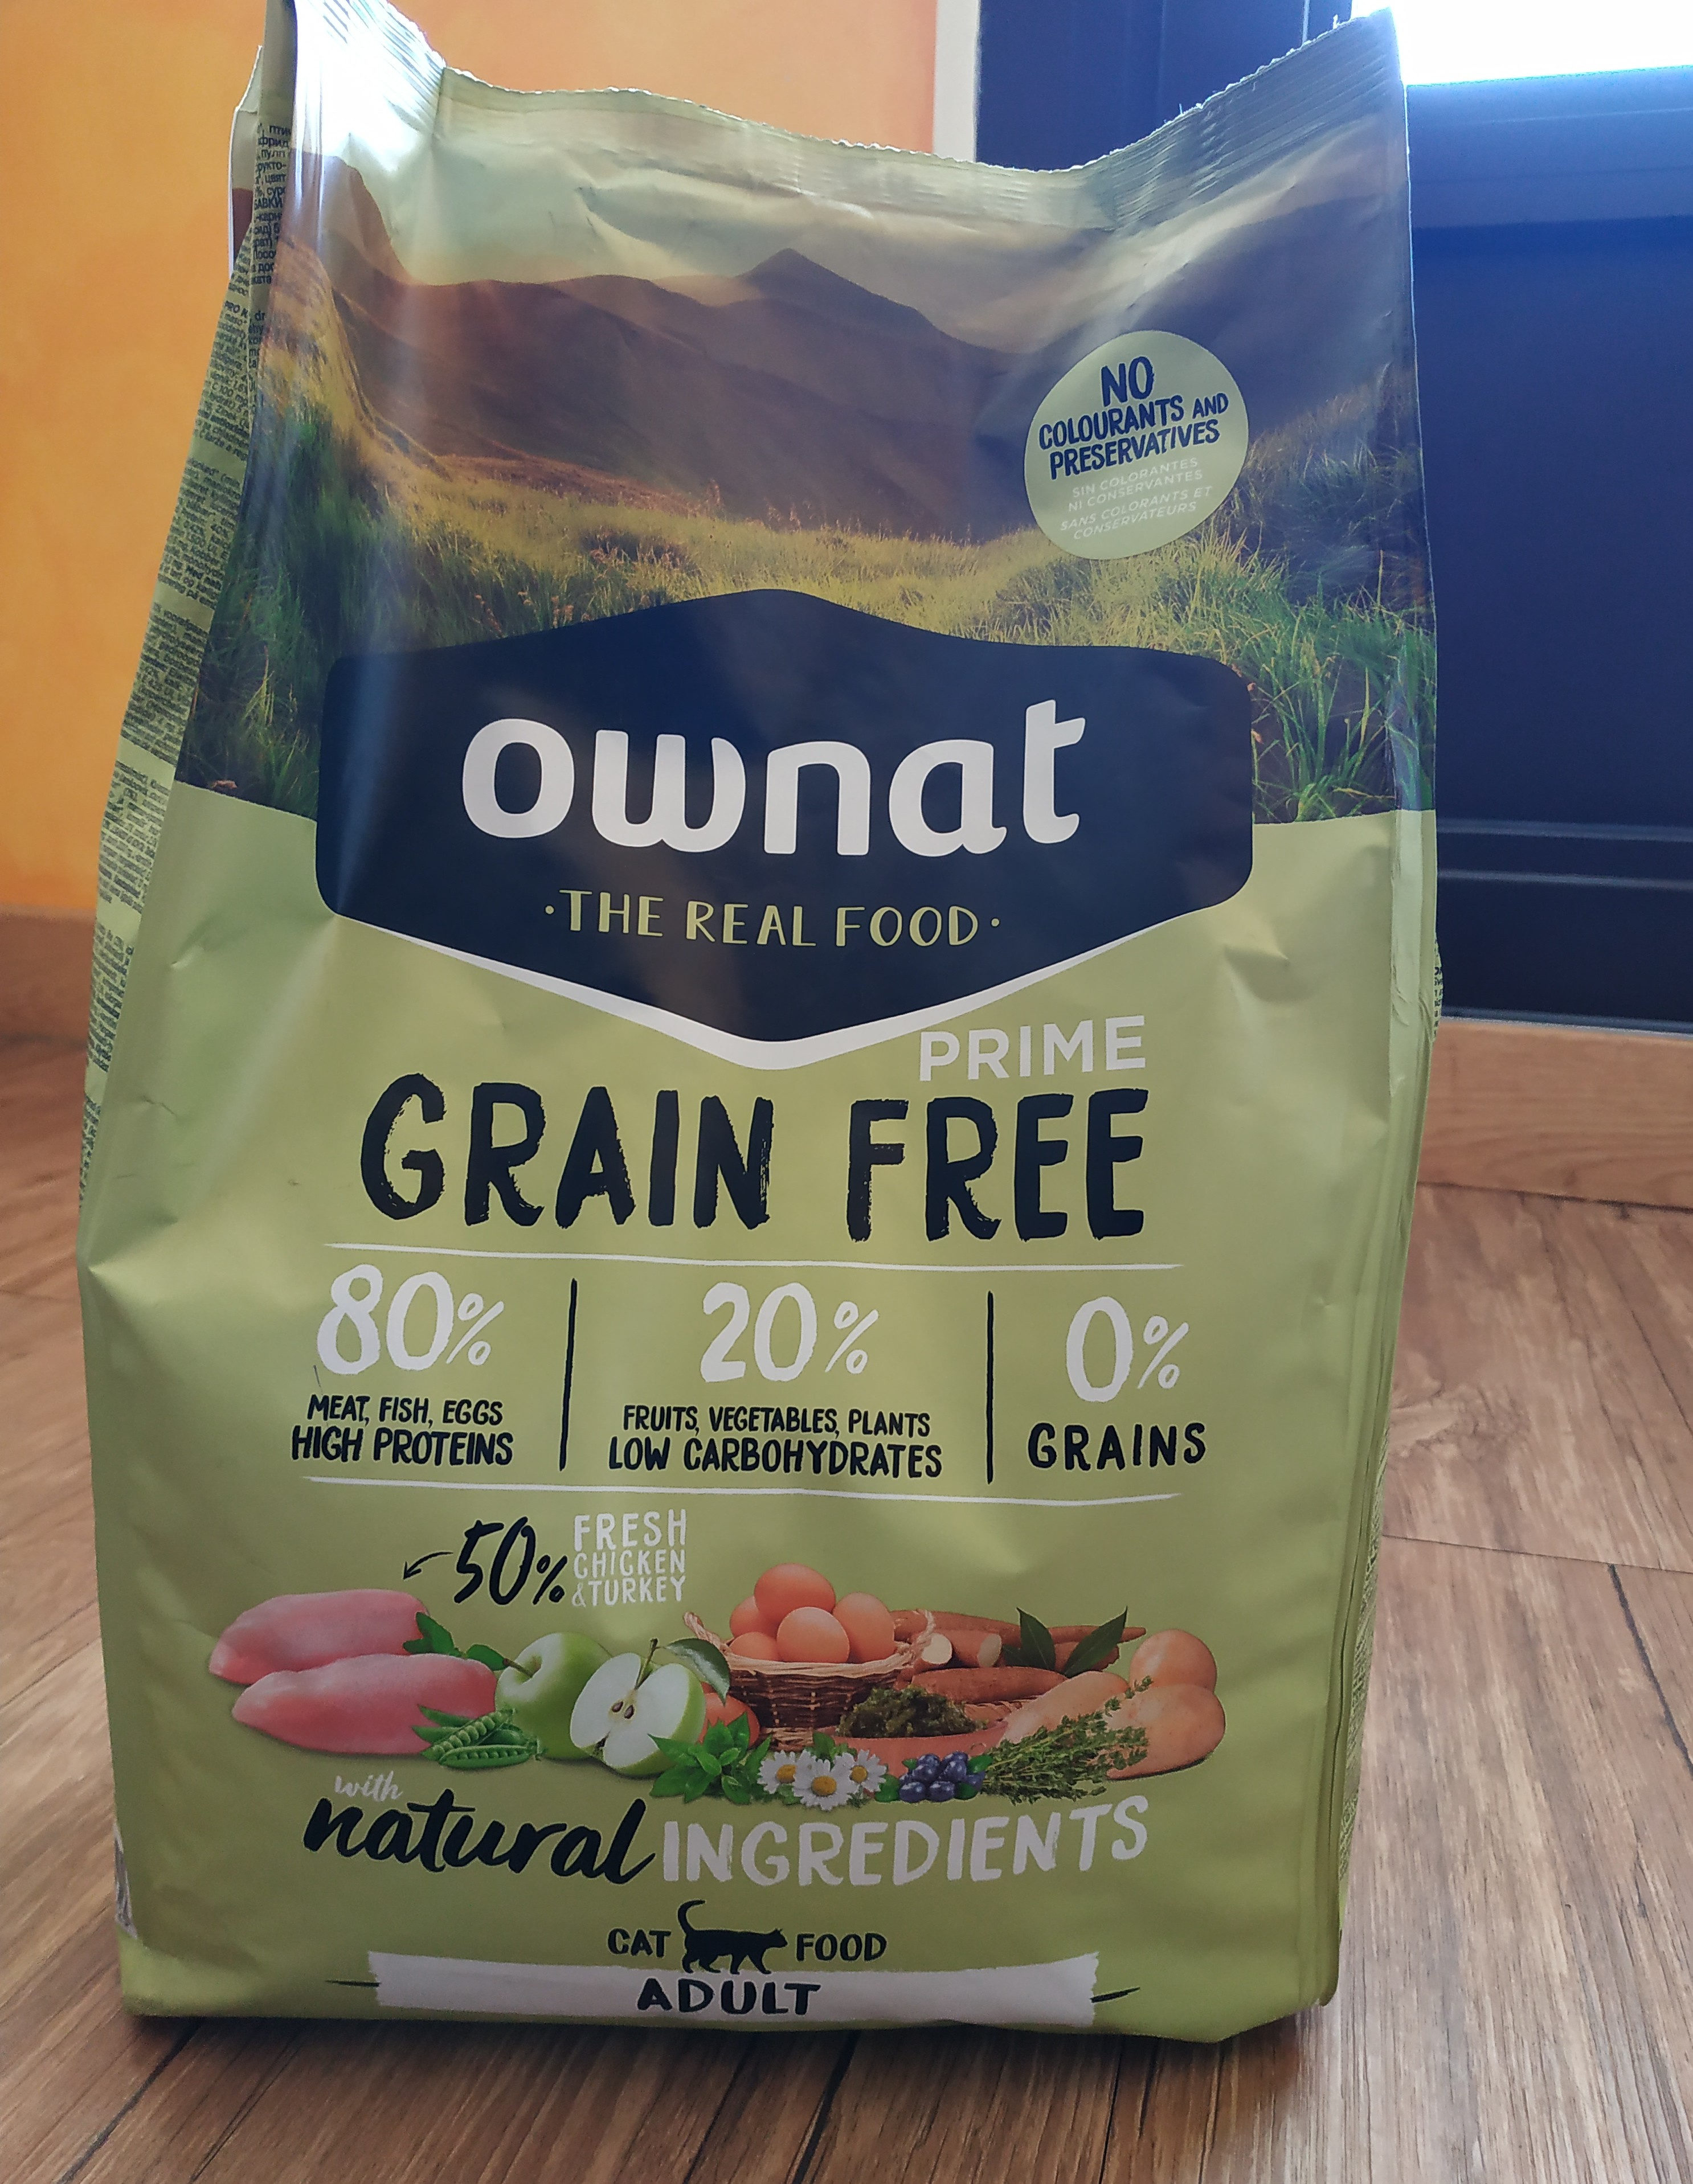 Prime grain free - Ownat the real food - 3kg